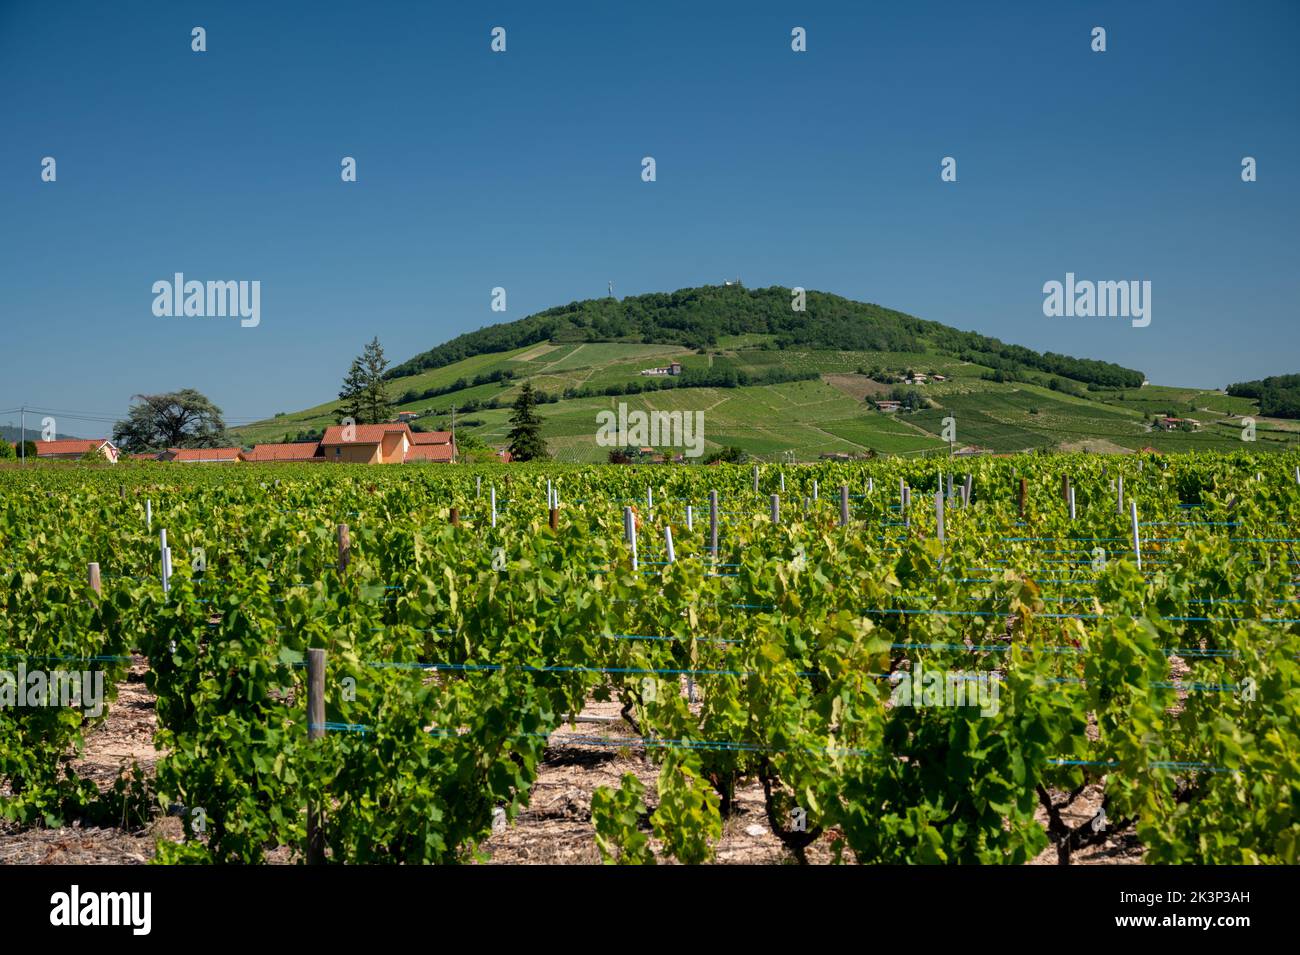 Blick auf grüne Weinberge in der Nähe von Mont Brouilly, Weinbezeichnung Côte de Brouilly beaujolais Weinanbaugebiet entlang der Beaujolais Weinstraße, Frankreich Stockfoto